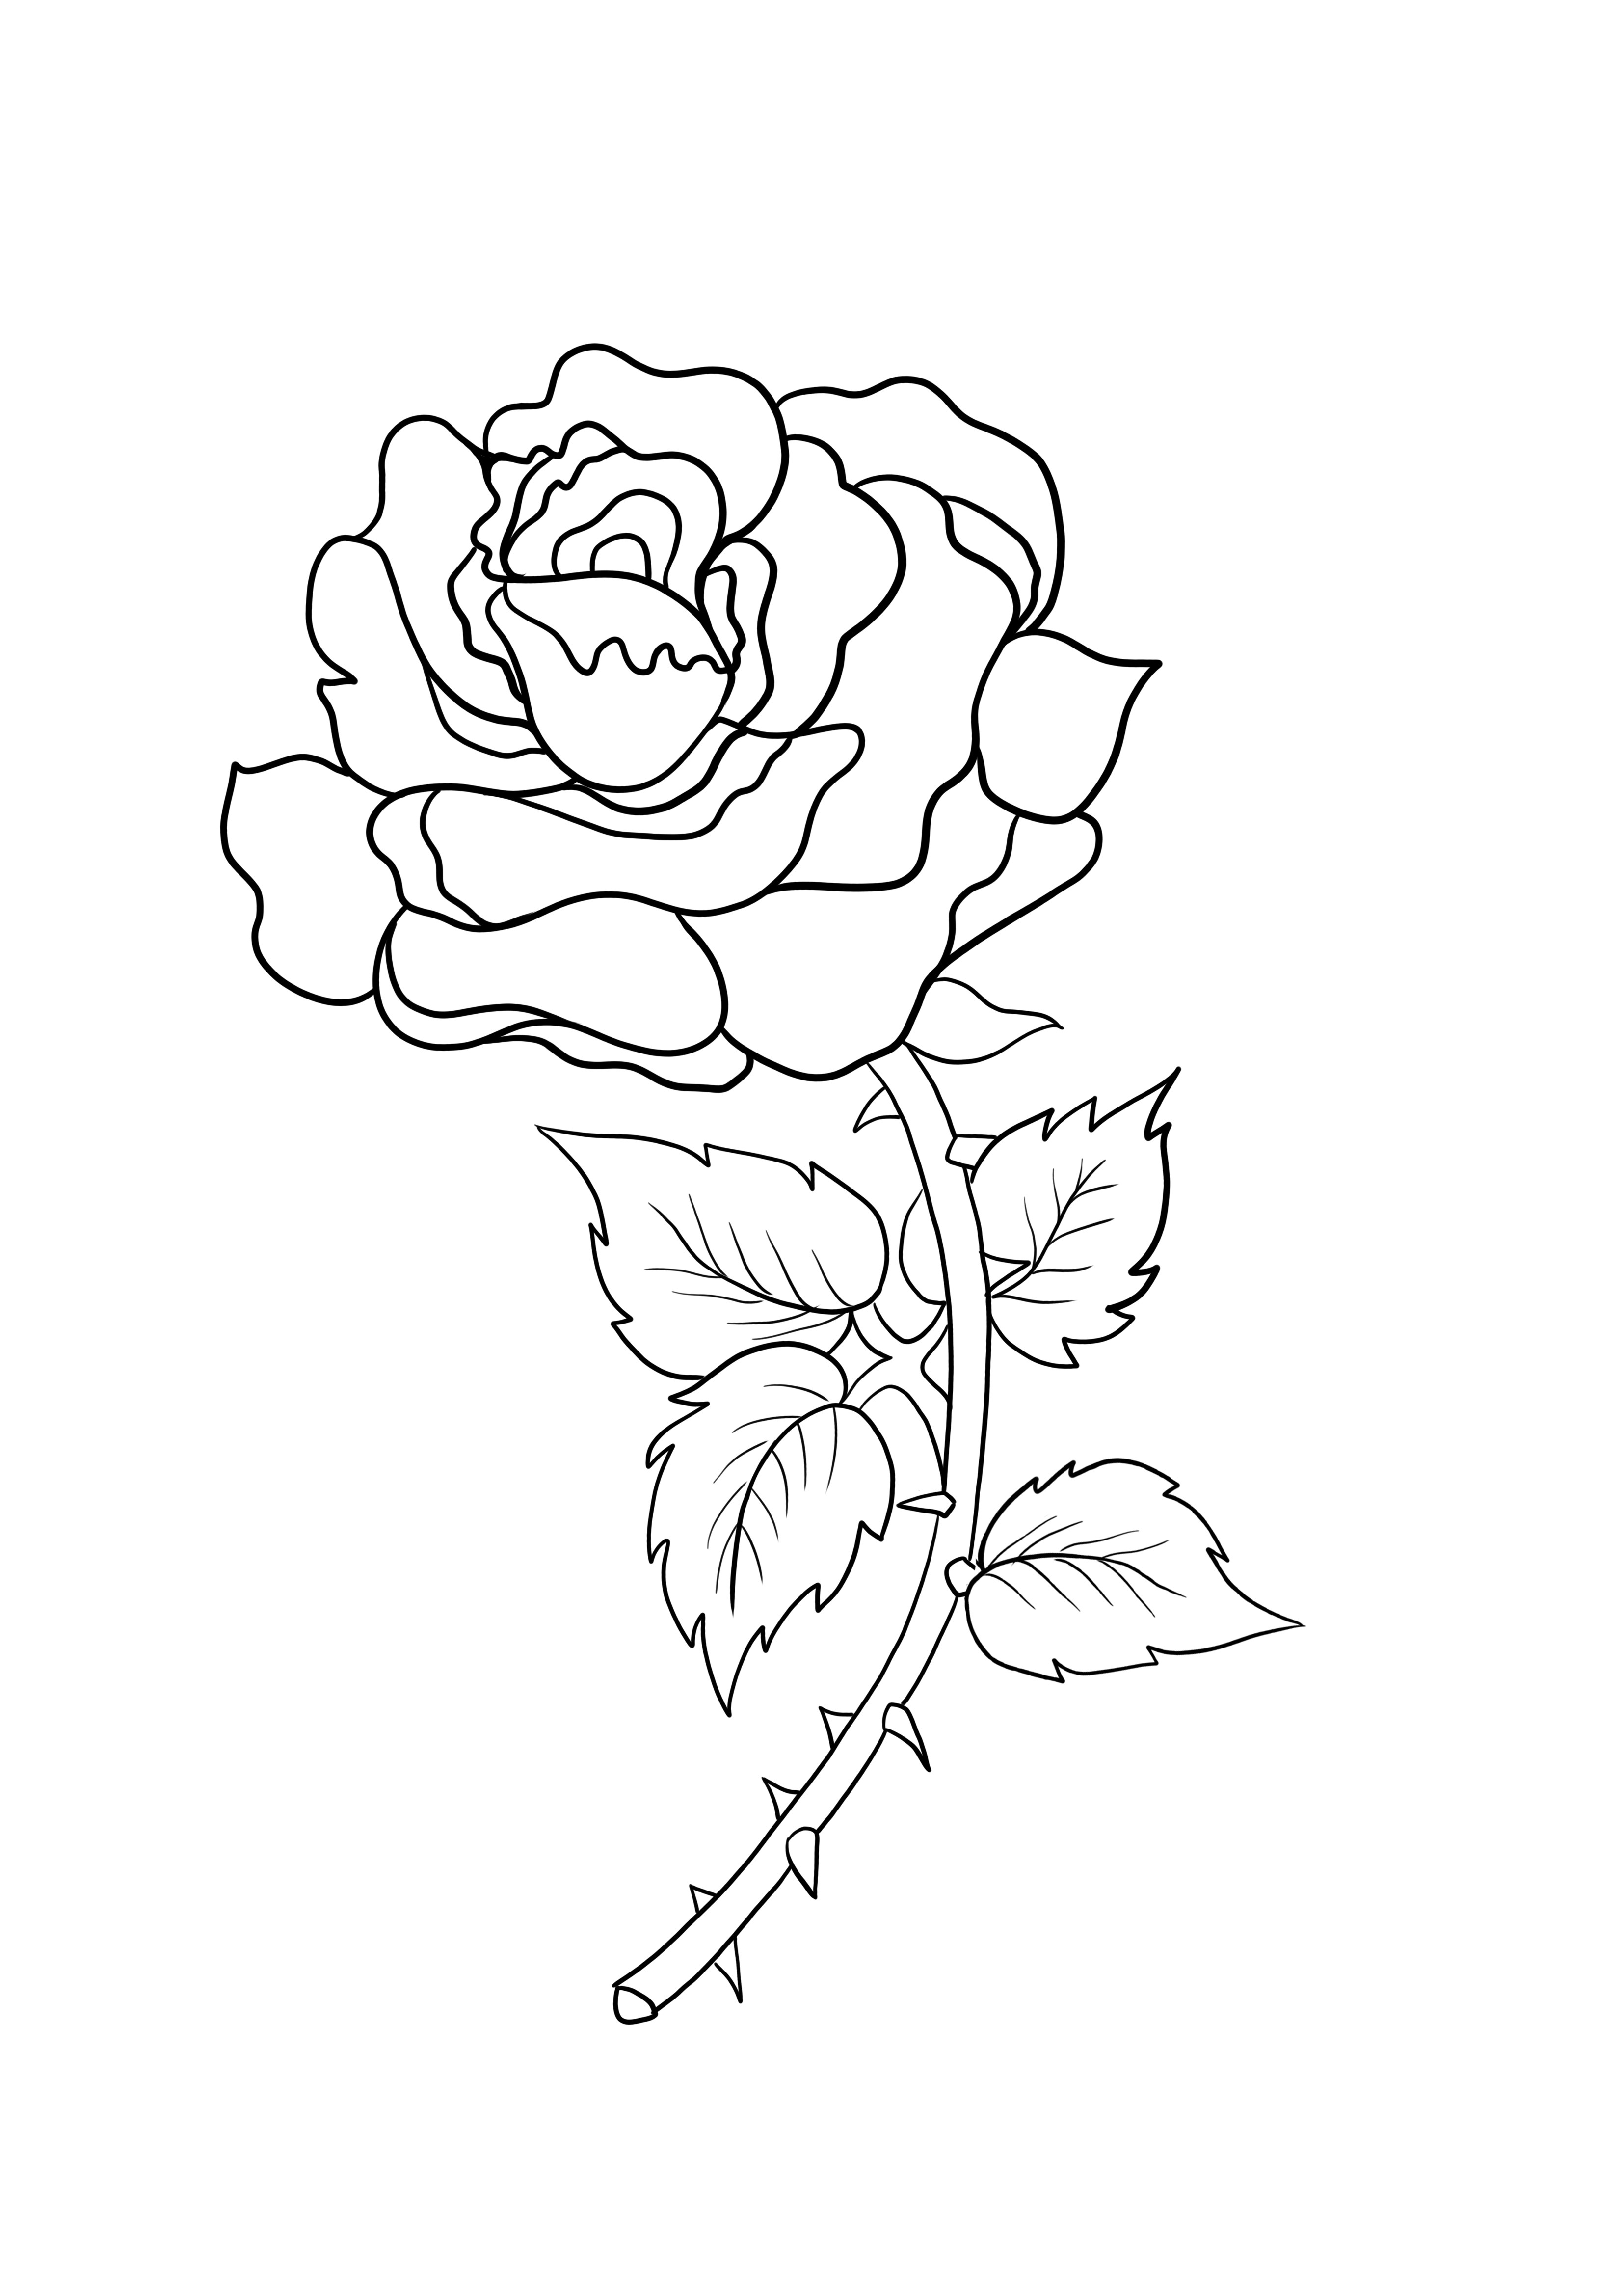 Róża z kolcami do wydrukowania za darmo i kolorowania